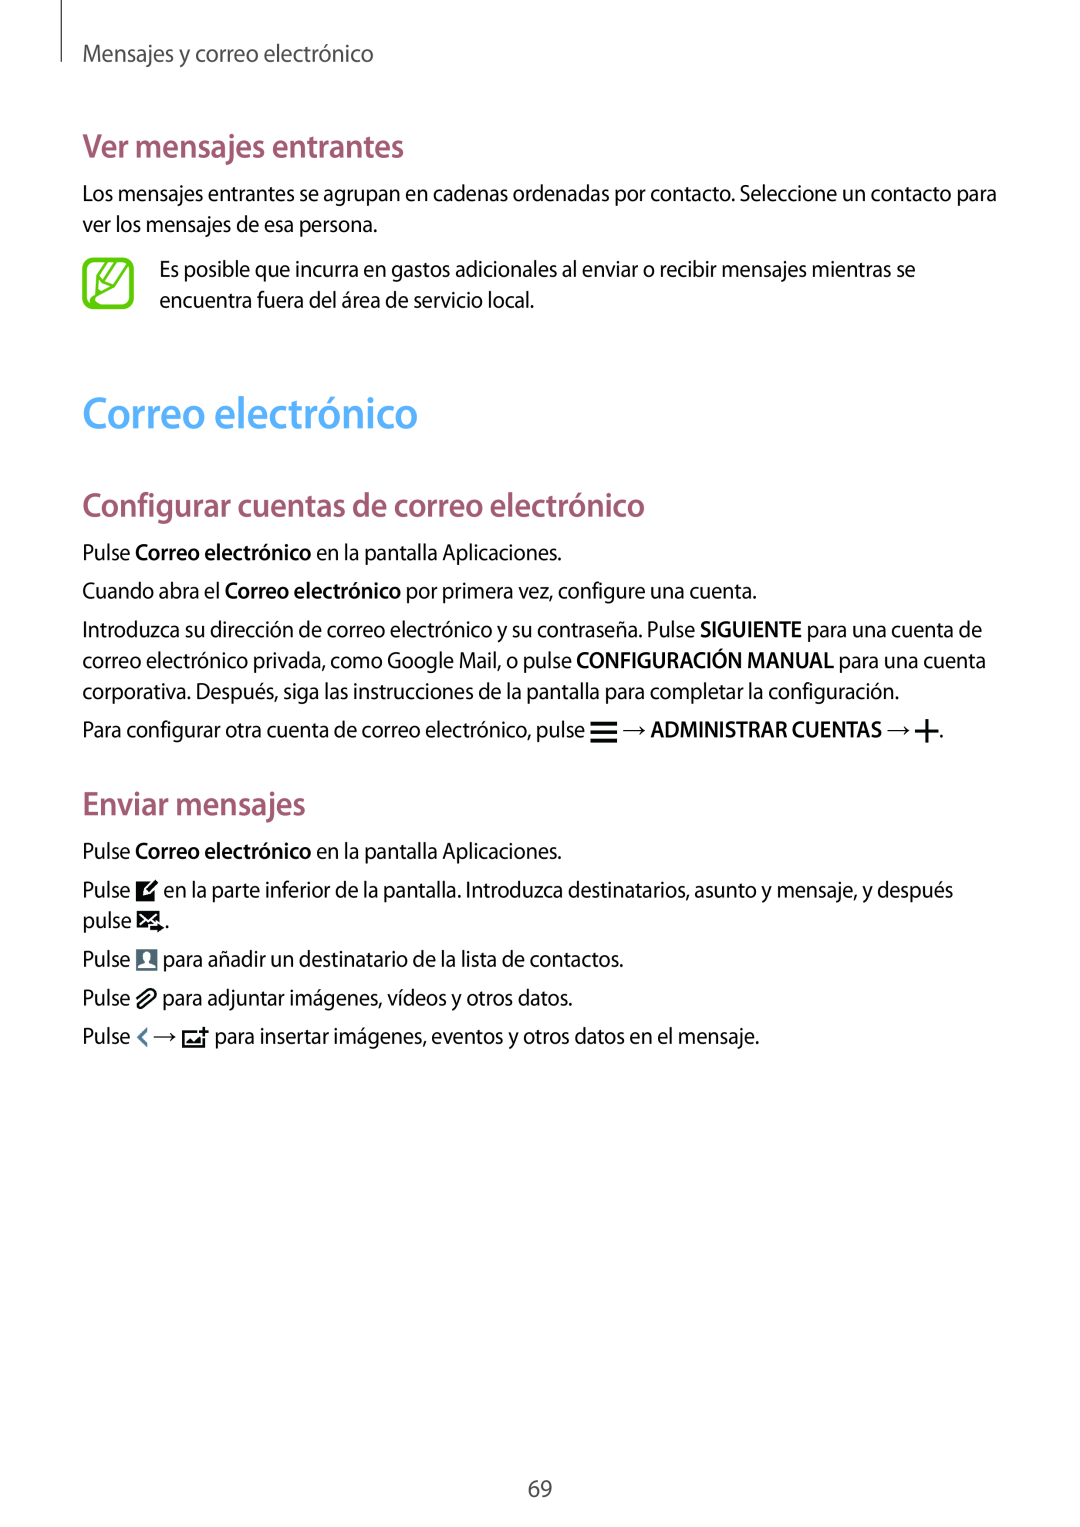 Samsung SM-G900FZKAAMO manual Correo electrónico, Ver mensajes entrantes, Configurar cuentas de correo electrónico 